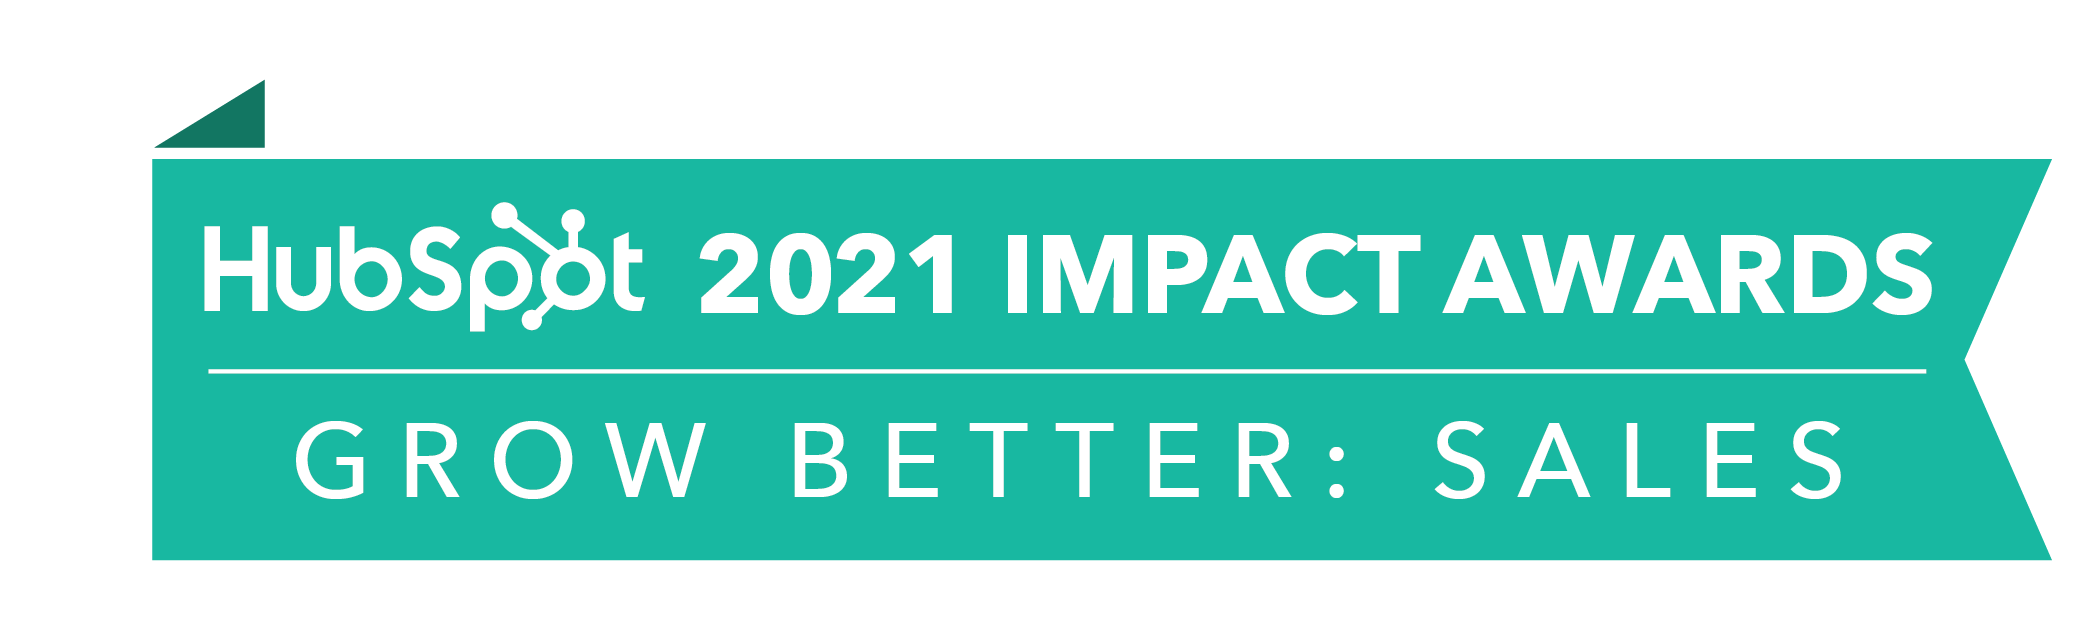 HubSpot_ImpactAwards_2021_GBSales2-2